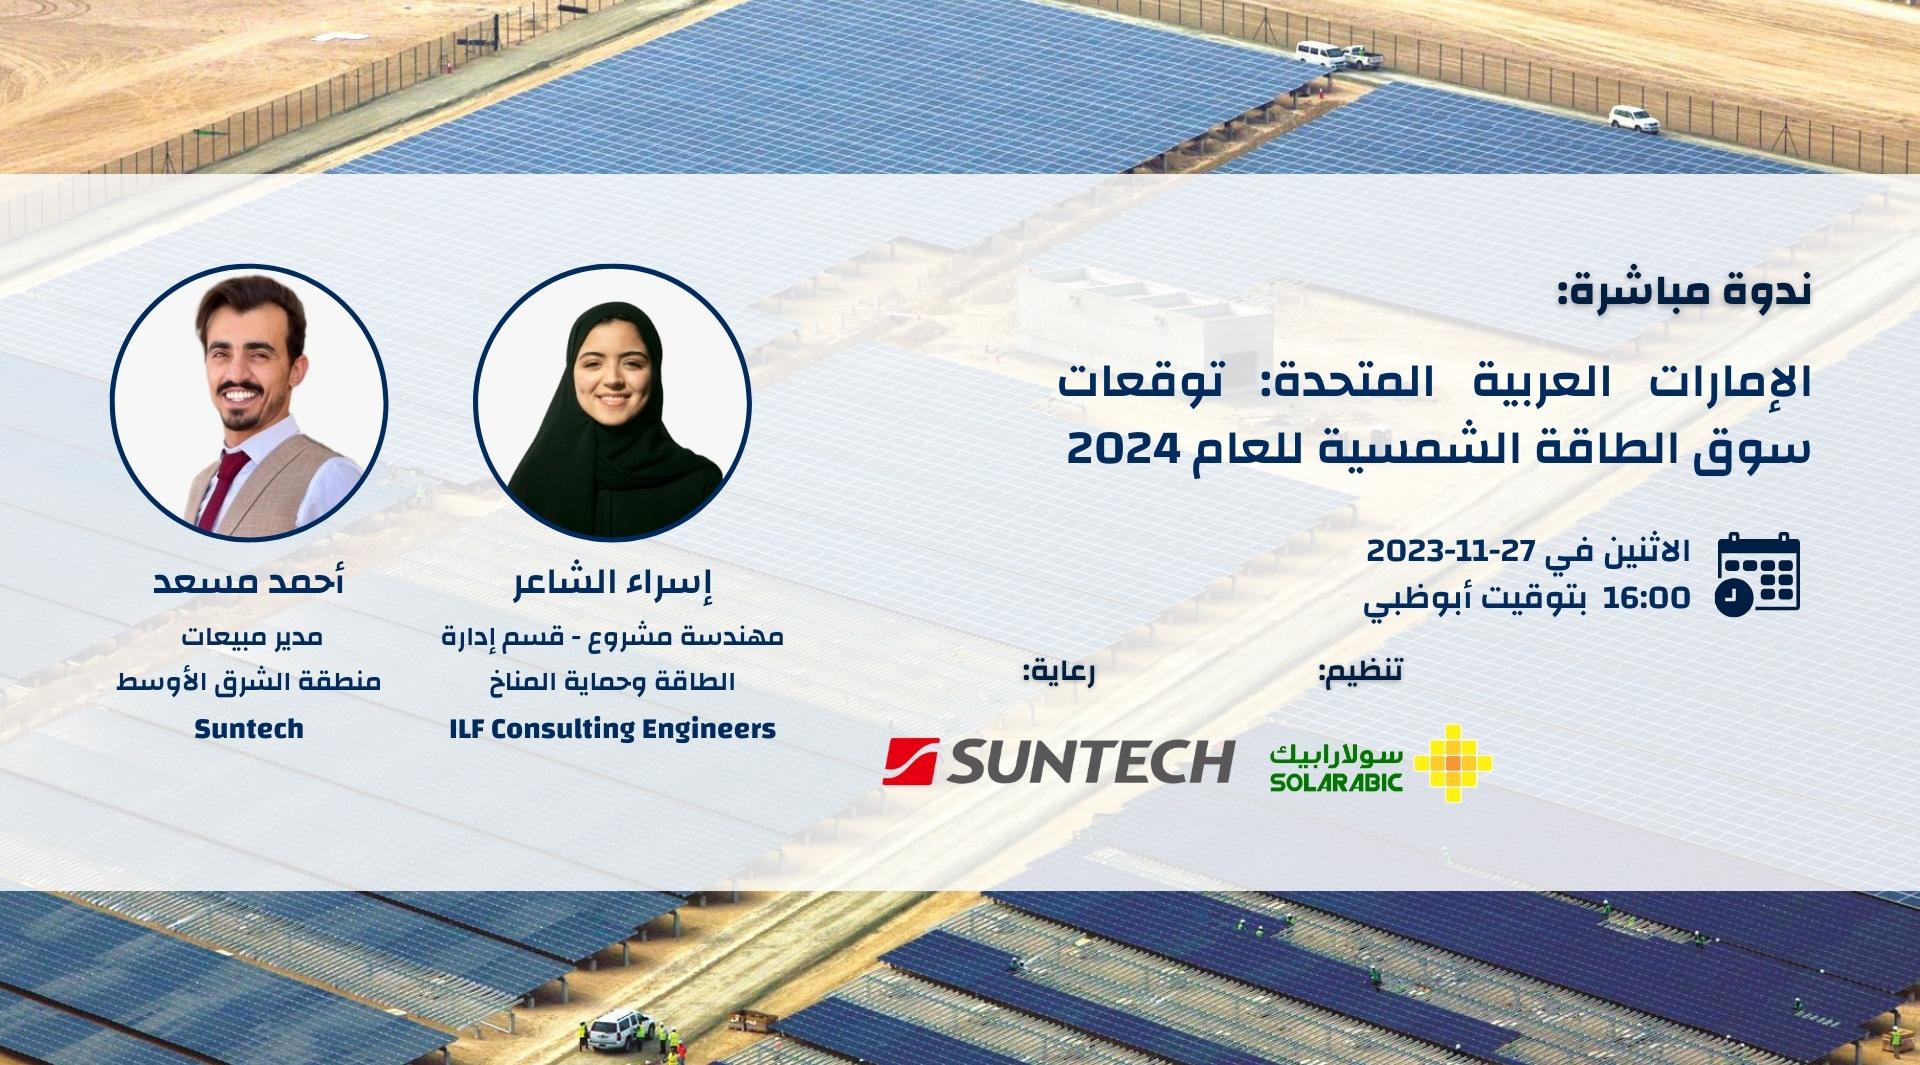 الإمارات العربية المتحدة: توقعات سوق الطاقة الشمسية للعام 2024